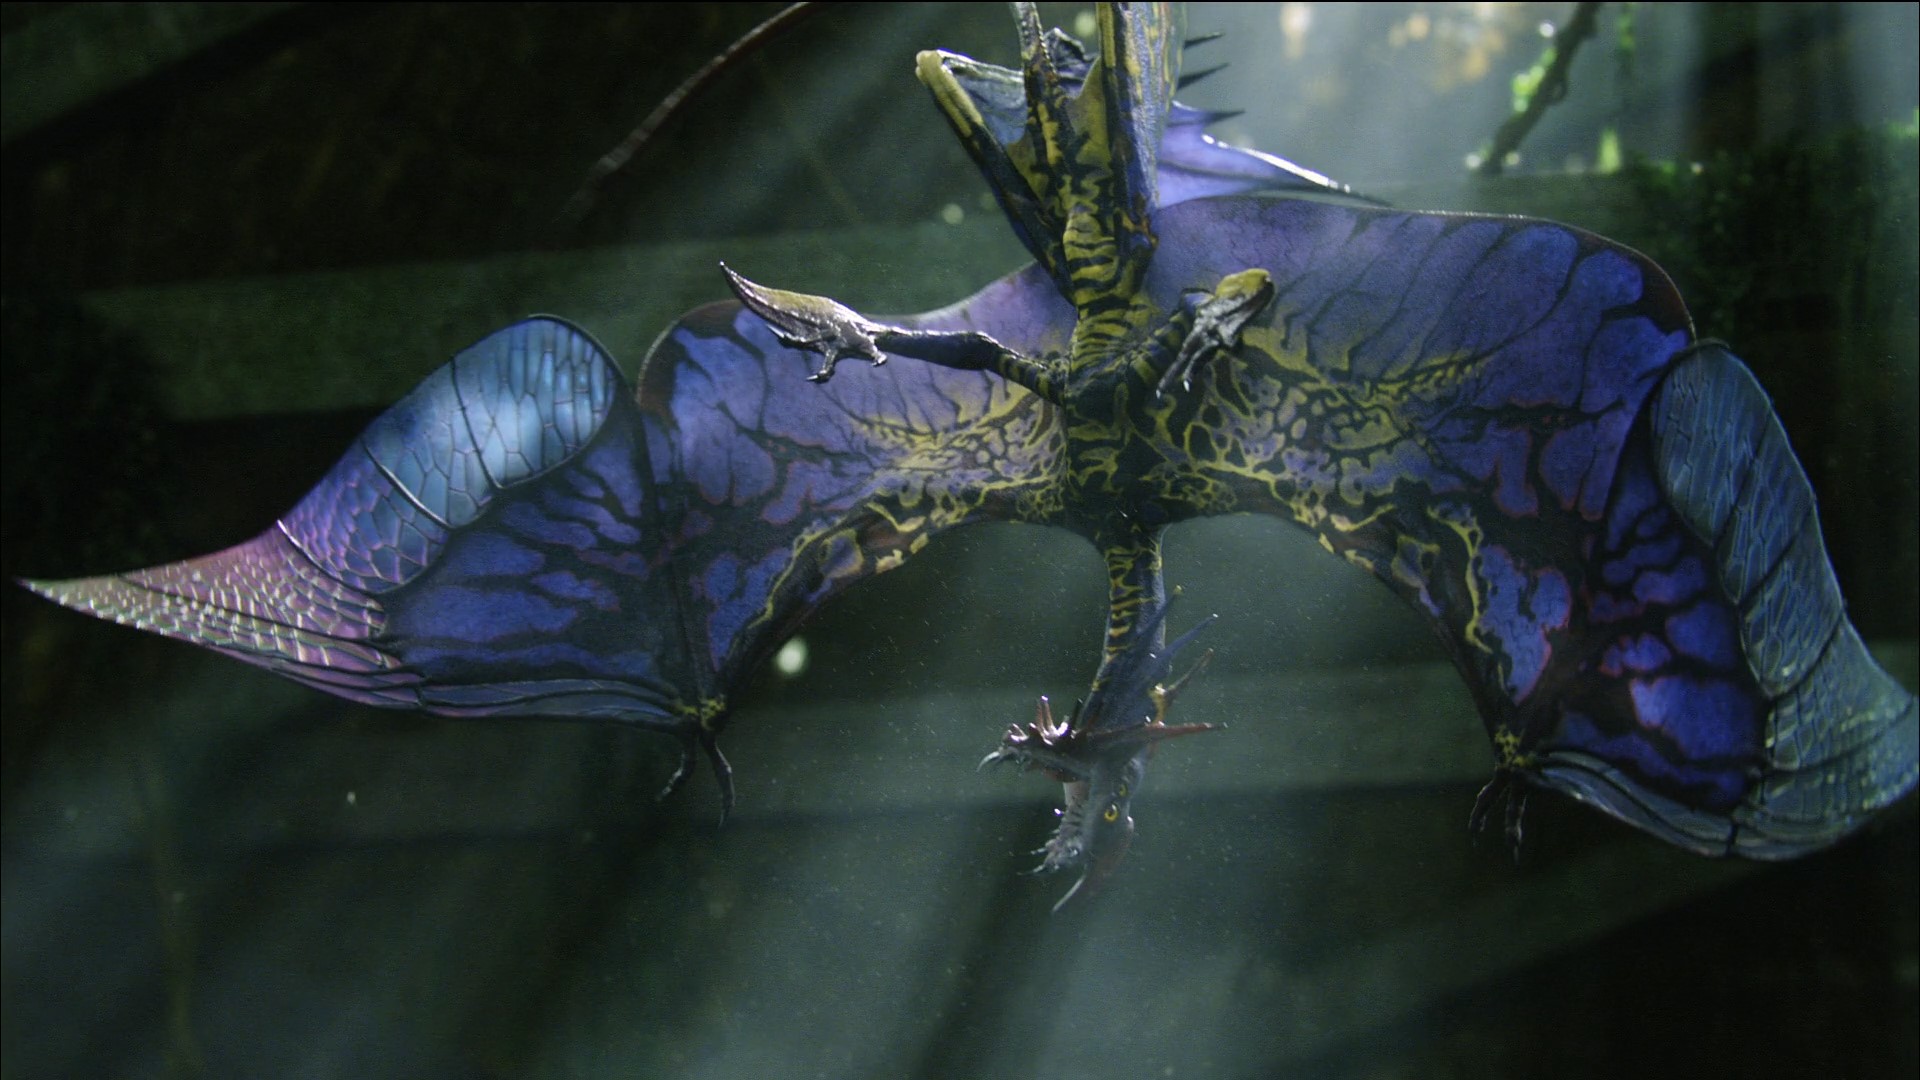 Avatar Frontiers of Pandora shown in Ubisoft Snowdrop tech trailer